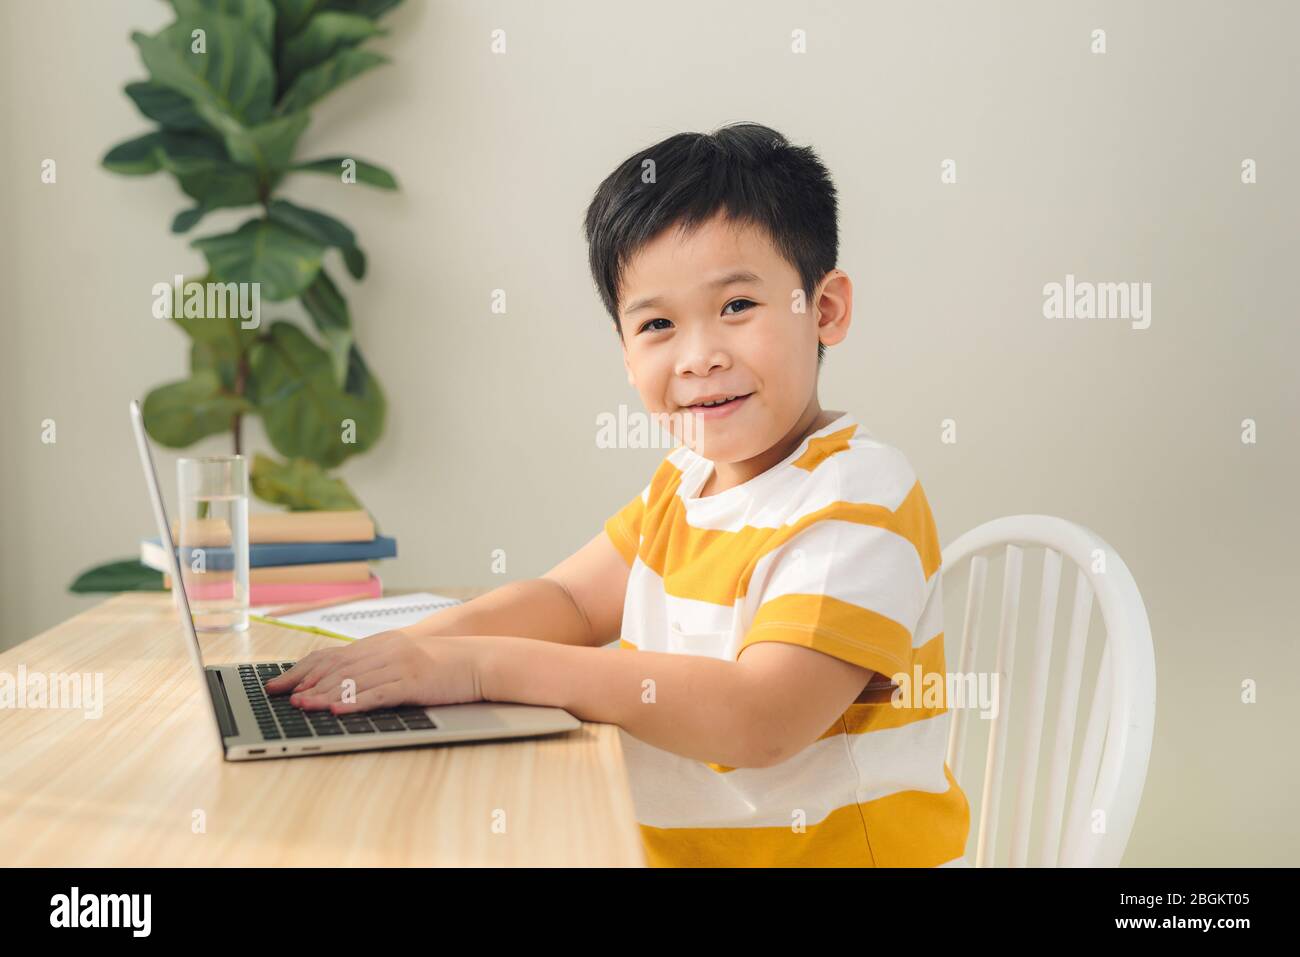 Smart suchen asiatische pretteen junge Schreiben und mit Computer-Laptop Online-Unterricht zu studieren. Stockfoto